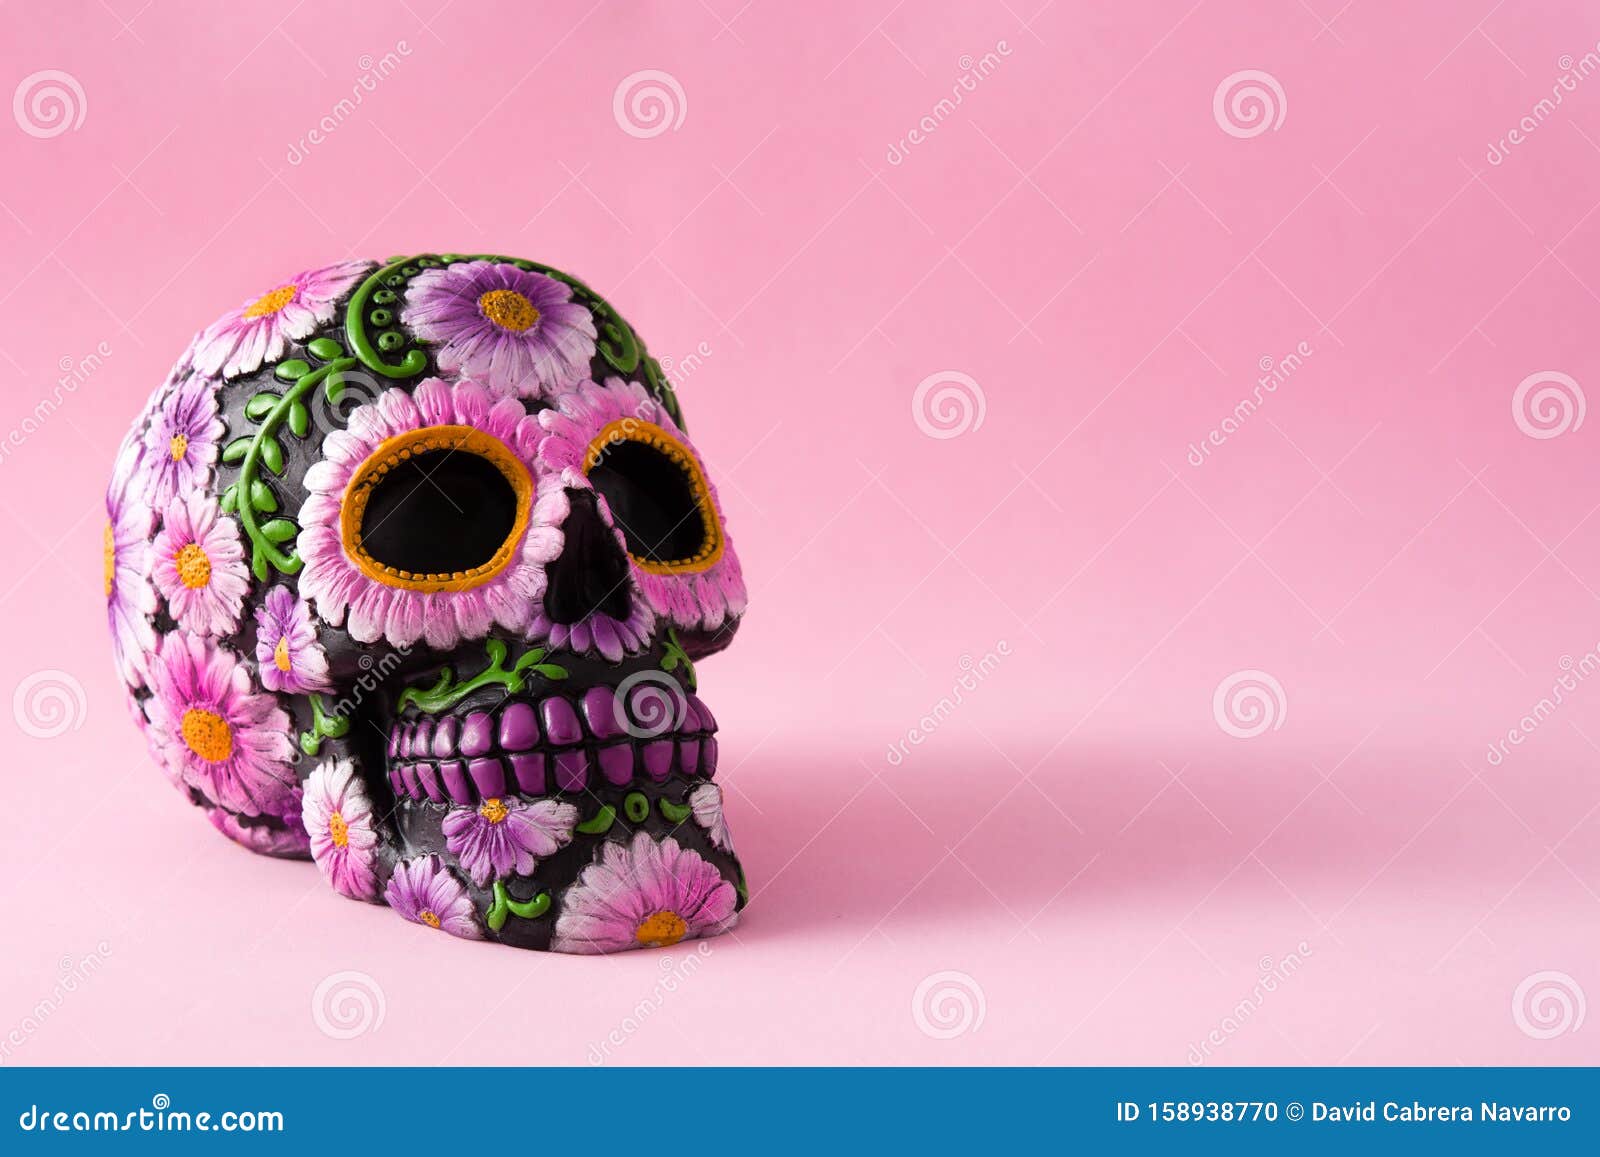 Calavera TÃpica Mexicana Con Flores Pintadas De Fondo Rosa. Dia De Los  Muertos Foto de archivo - Imagen de violeta, flores: 158938770